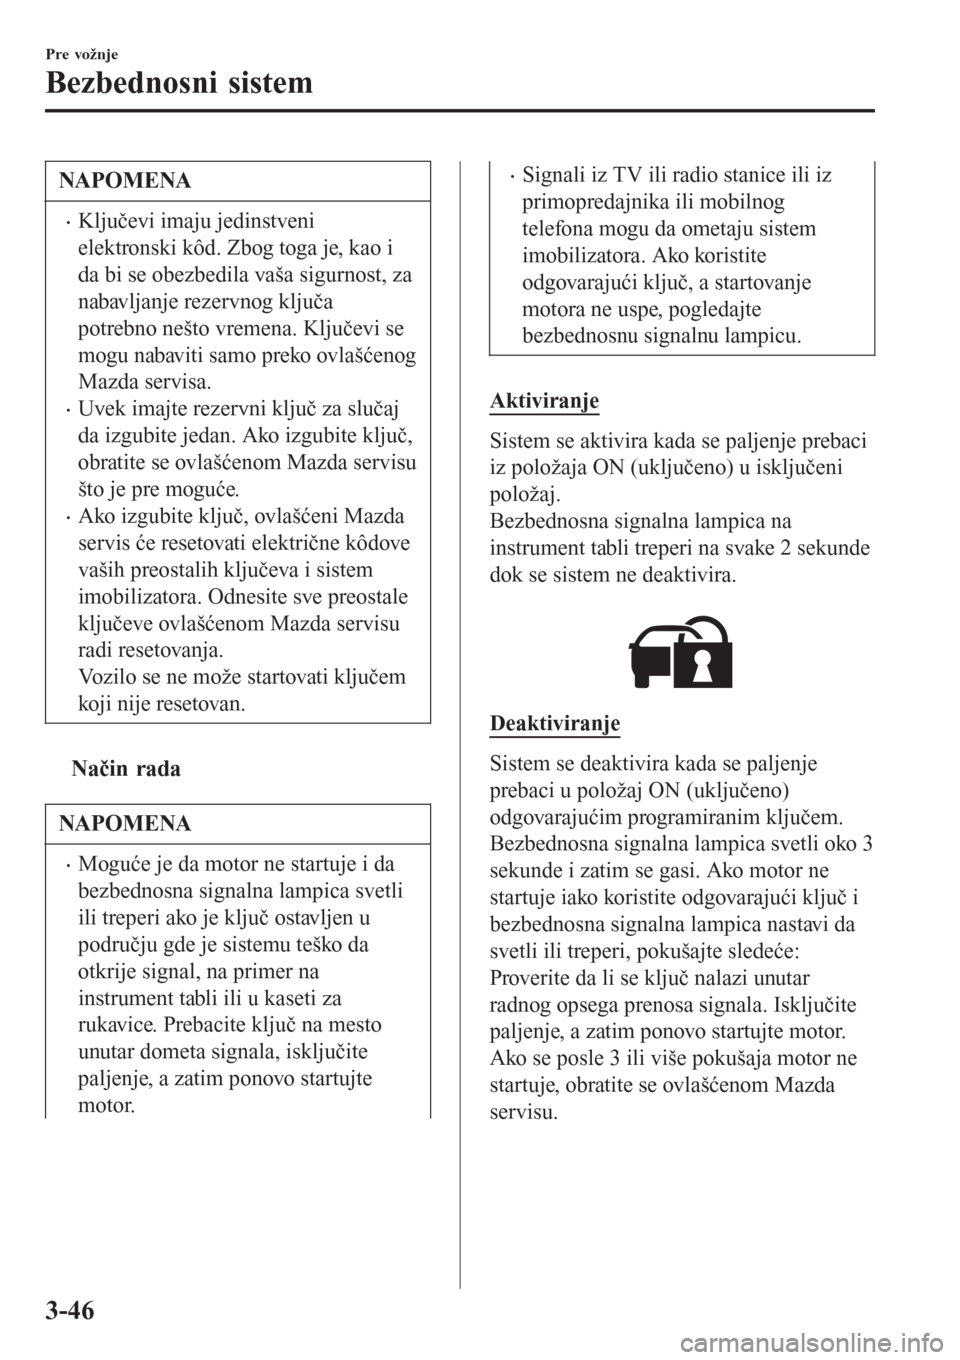 MAZDA MODEL 3 HATCHBACK 2015  Korisničko uputstvo (in Serbian) NAPOMENA
•Ključevi imaju jedinstveni
elektronski kôd. Zbog toga je, kao i
da bi se obezbedila vaša sigurnost, za
nabavljanje rezervnog ključa
potrebno nešto vremena. Ključevi se
mogu nabaviti 